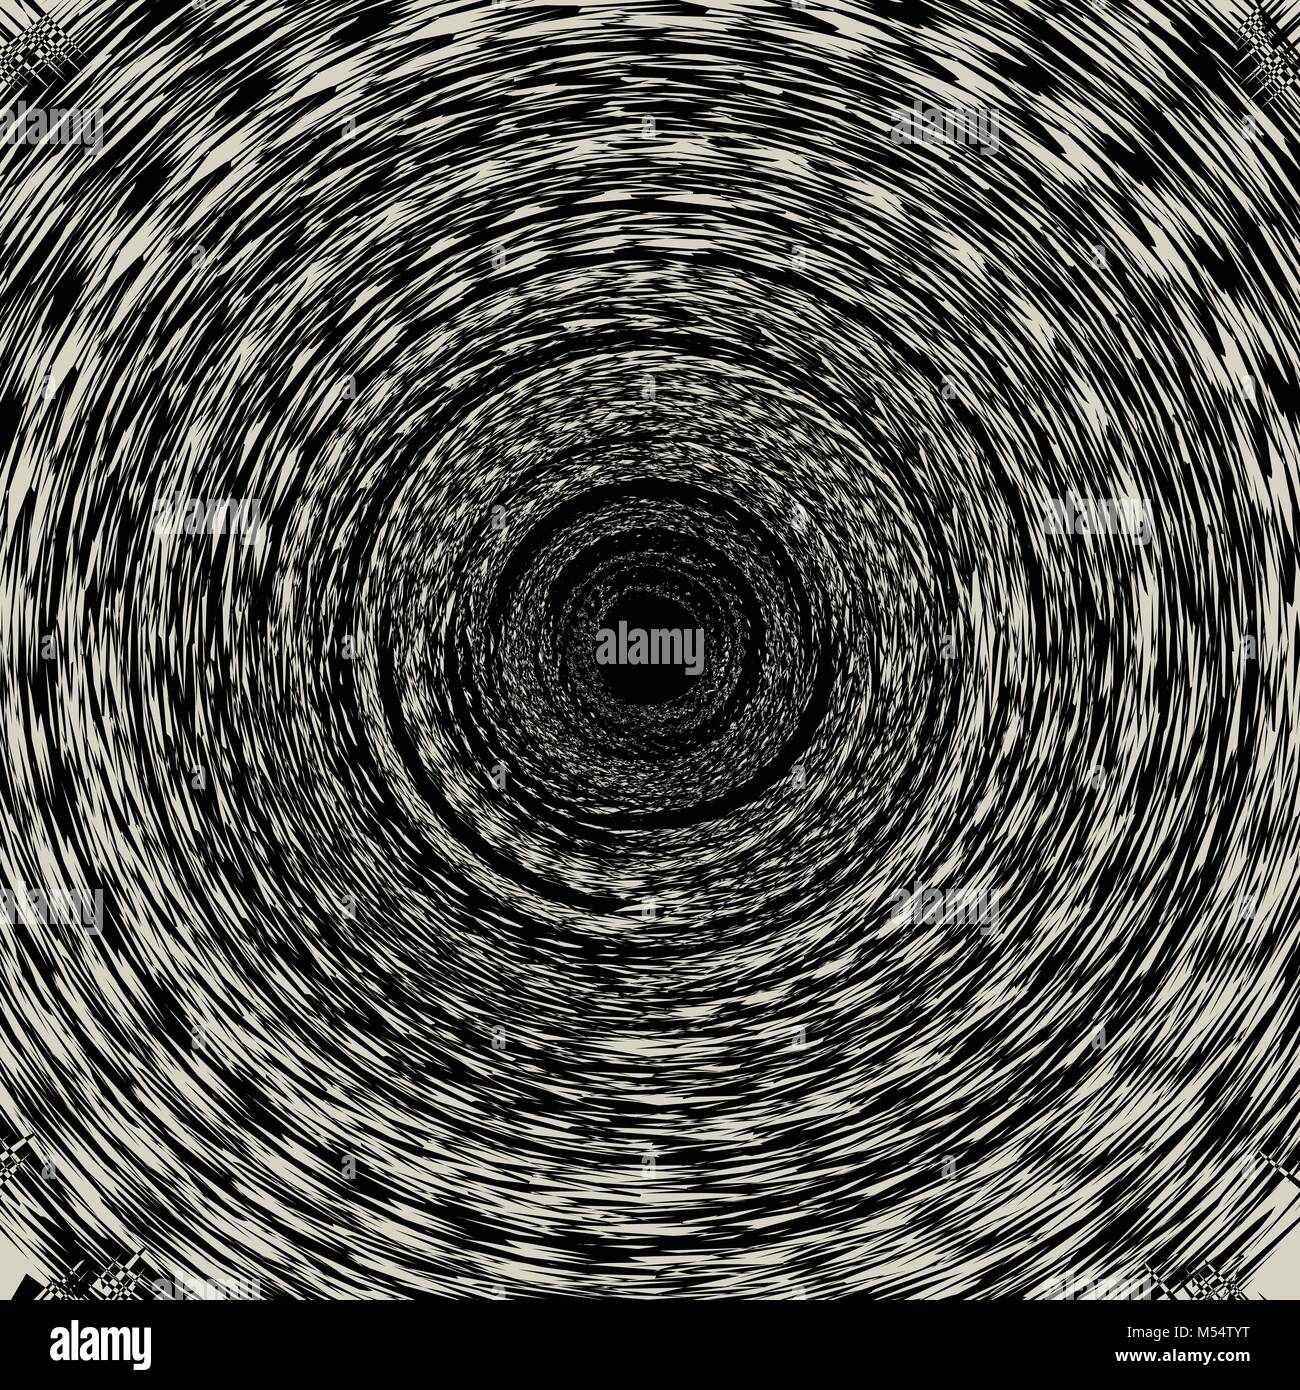 Abstract ruotare a spirale nero filo spinato sul marrone chiaro dello sfondo. Illustrazione Vettoriale Illustrazione Vettoriale